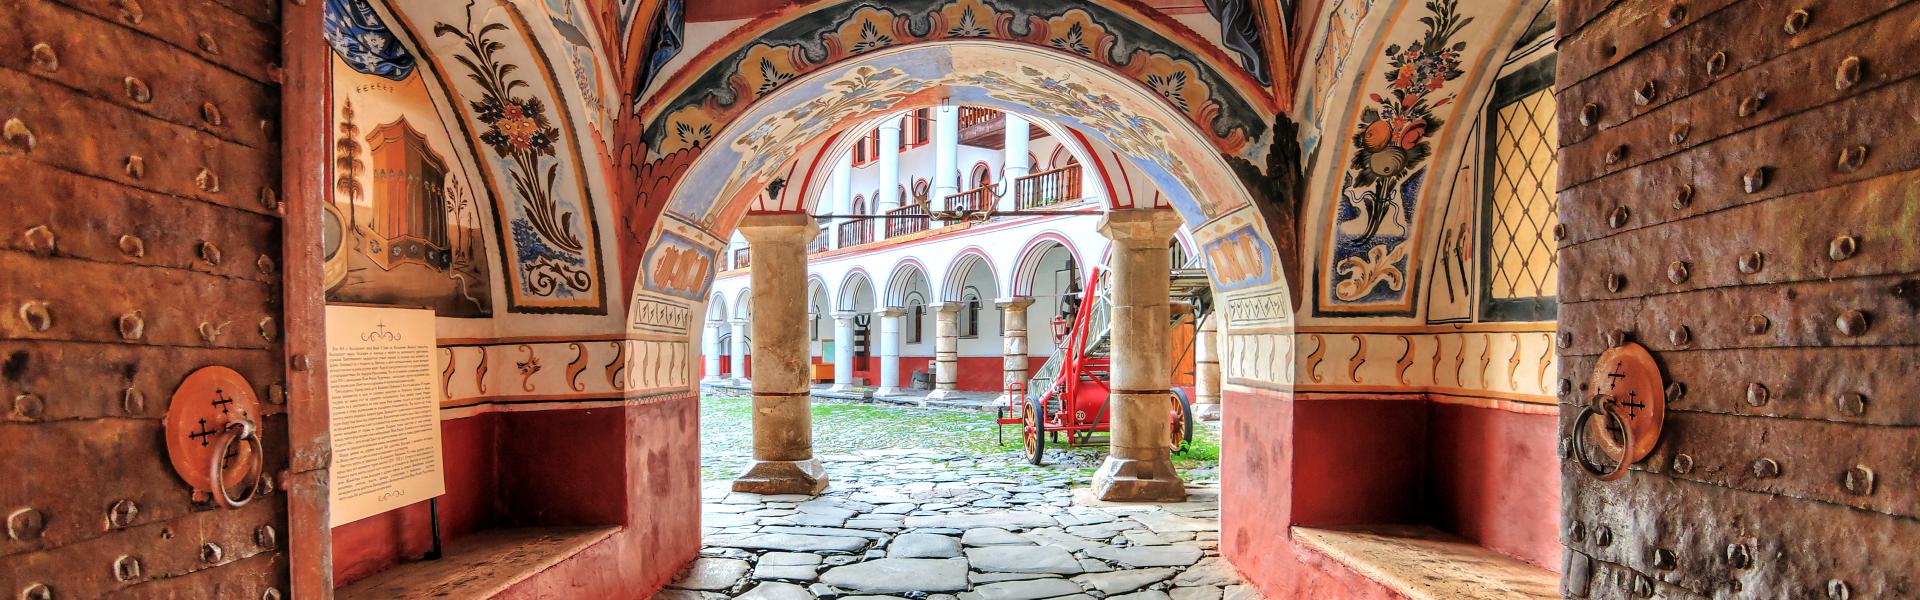 Semesterhus Bulgarien är en exotisk resa där du kan välja mellan värme eller skidåkning  - Casamundo